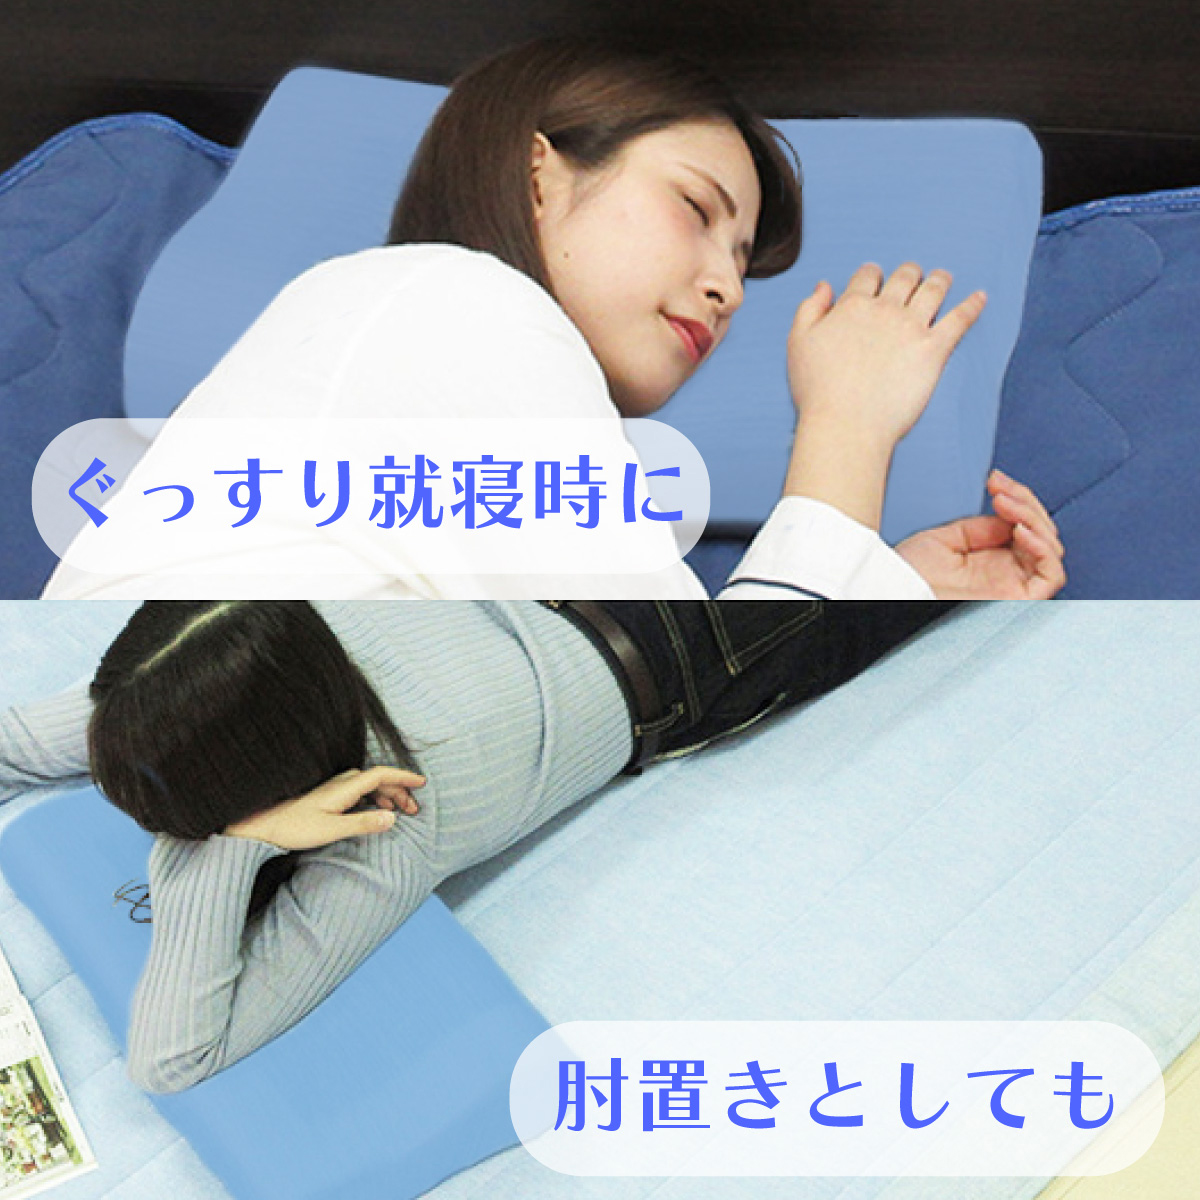 就寝時にも、ひと休みの肘置きにもご使用いただけることを明記したバナー画像